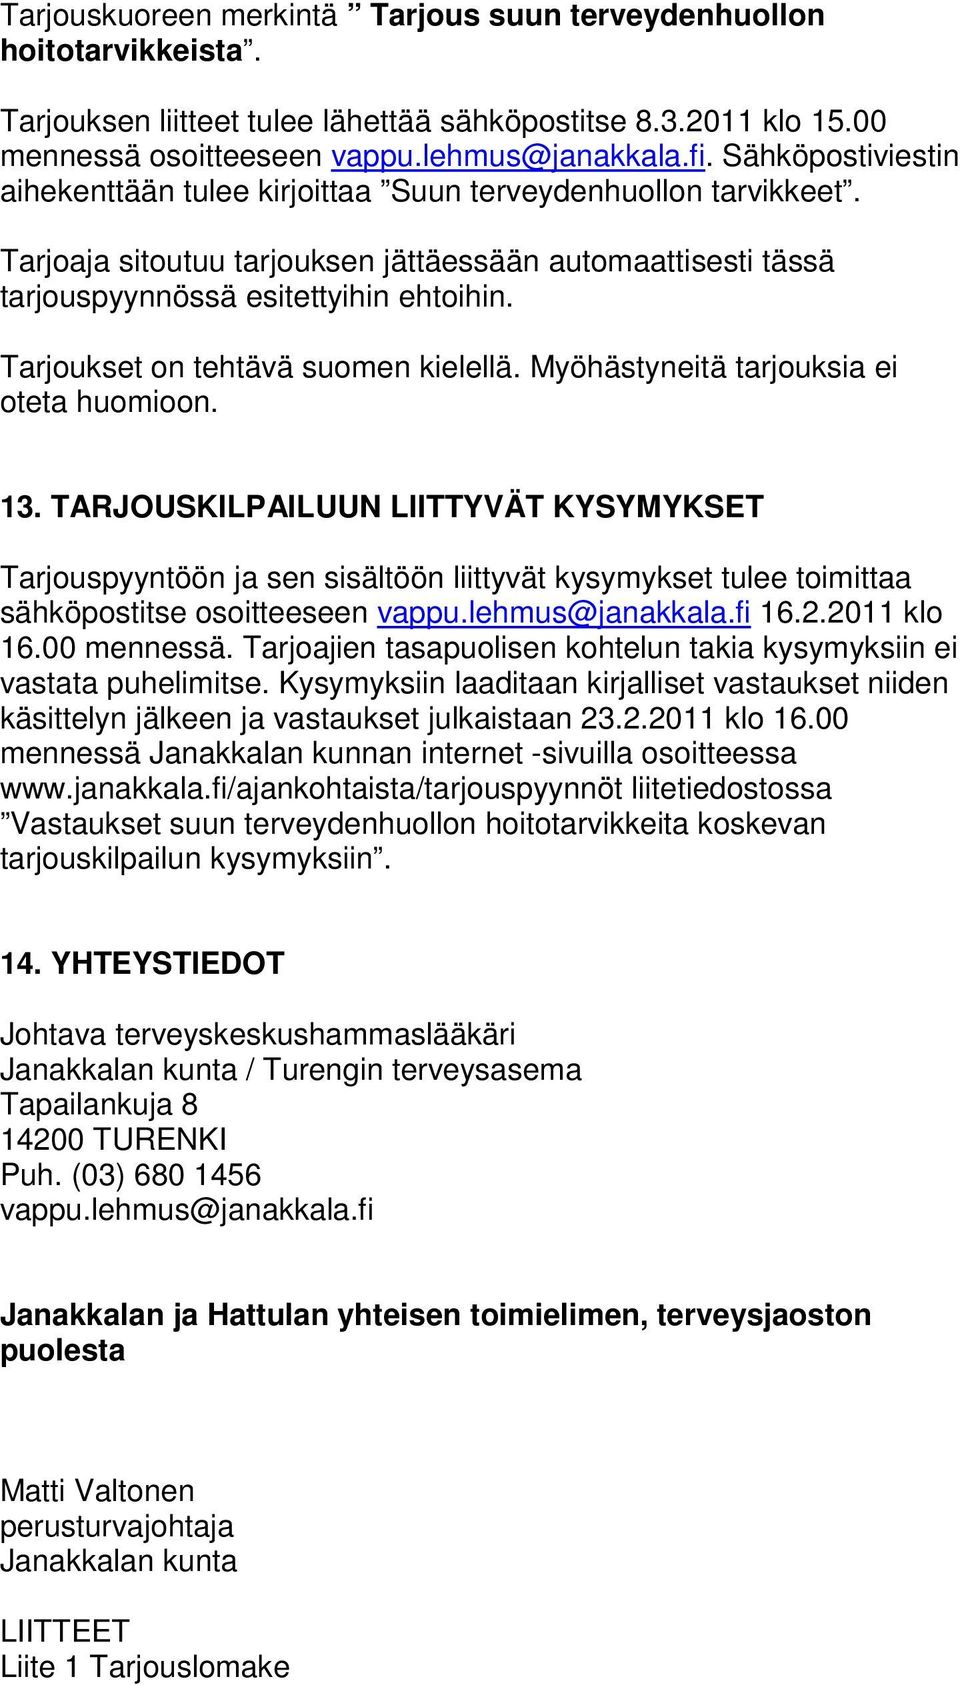 Tarjoukset on tehtävä suomen kielellä. Myöhästyneitä tarjouksia ei oteta huomioon. 13.